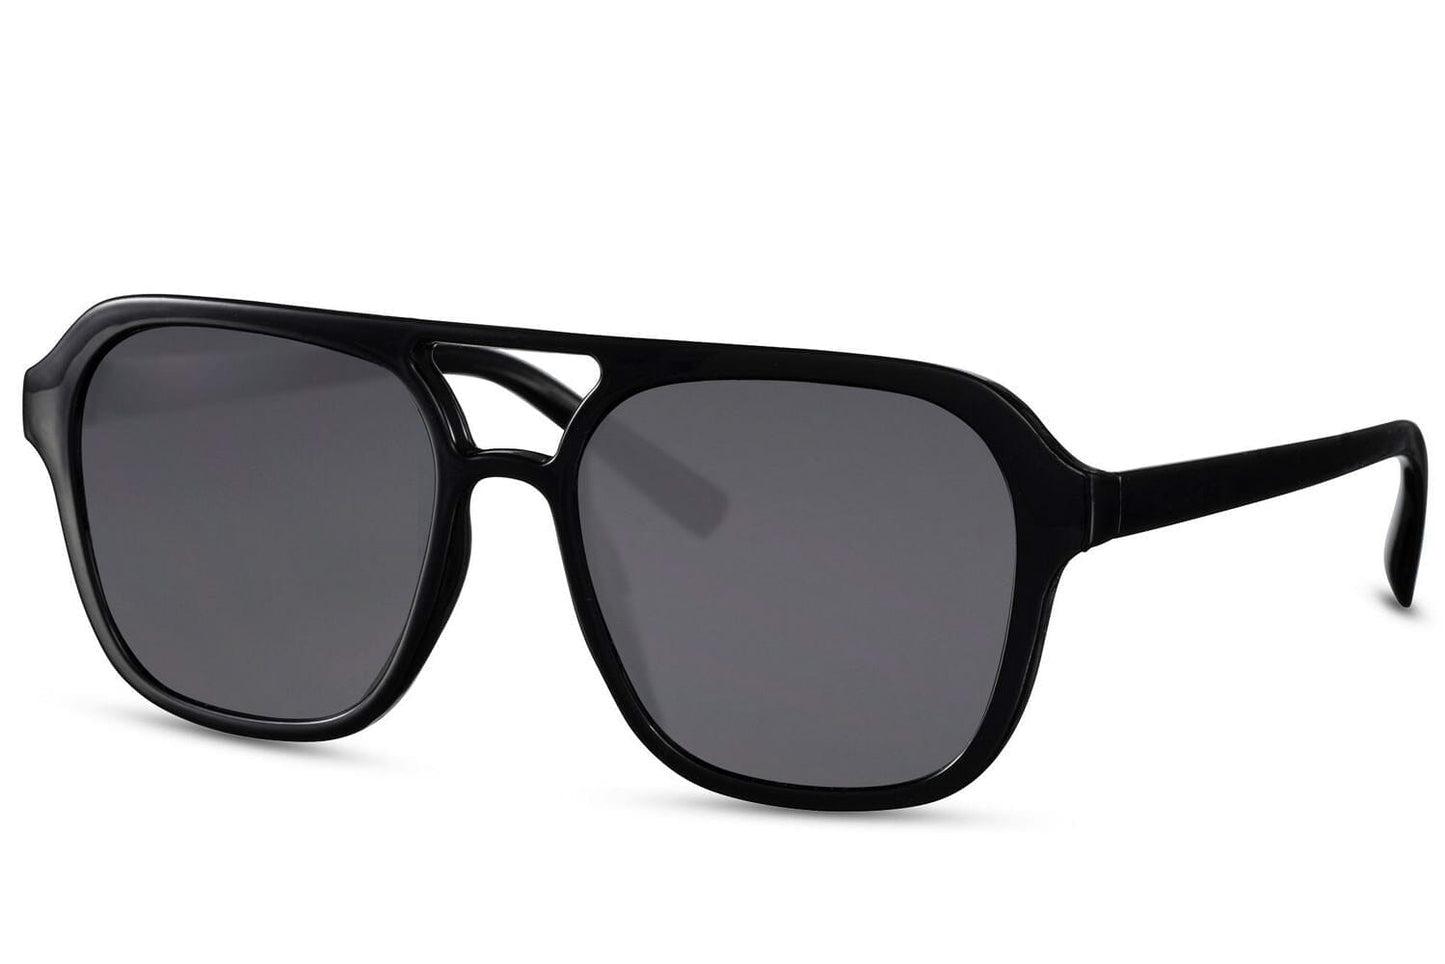 Retro aviator sunglasses. Black lenses and black frames. Fully UV400 protected.